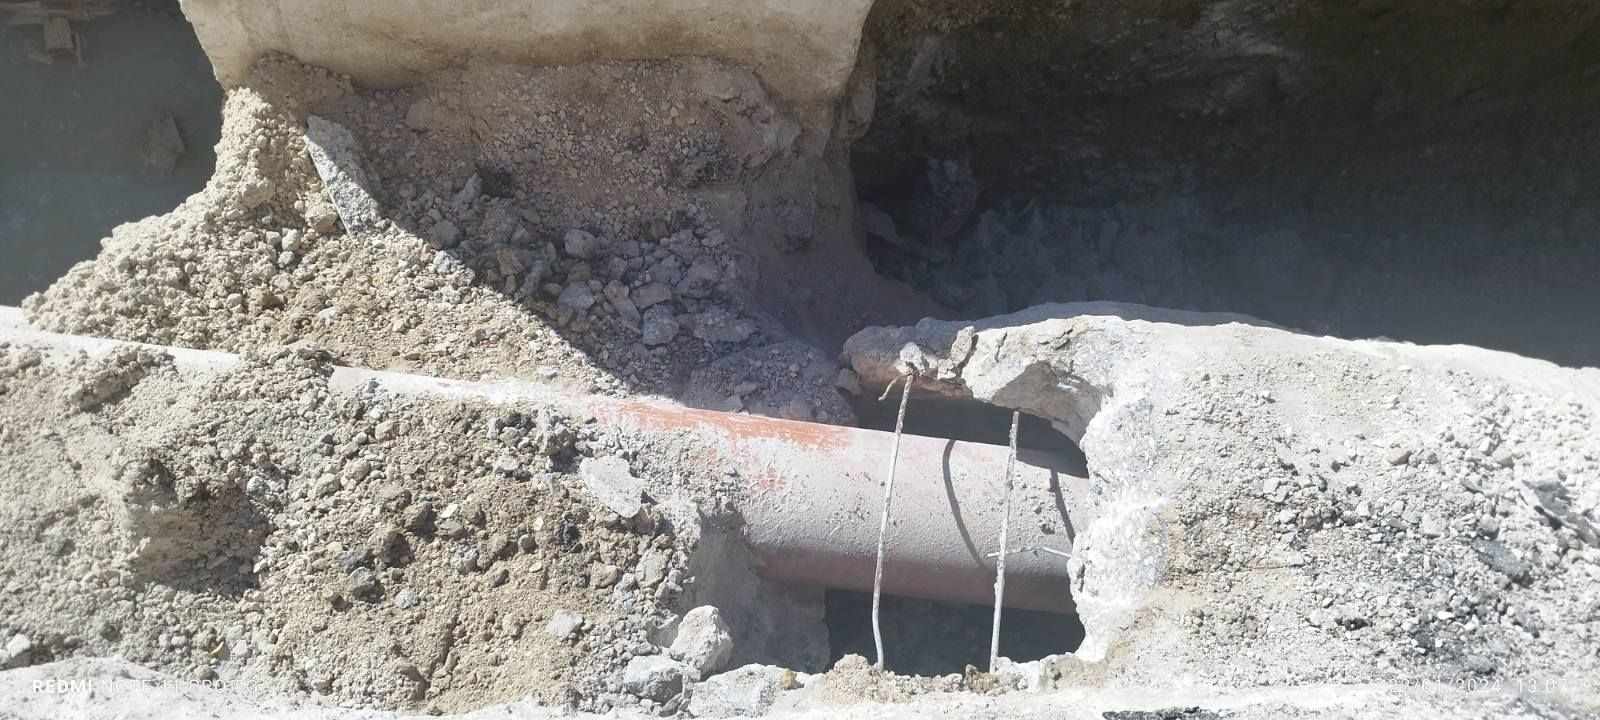 Ζάκυνθος: Παραμένει χωρίς νερό η πόλη-  Τι αποκάλυψαν οι εκσκαφές